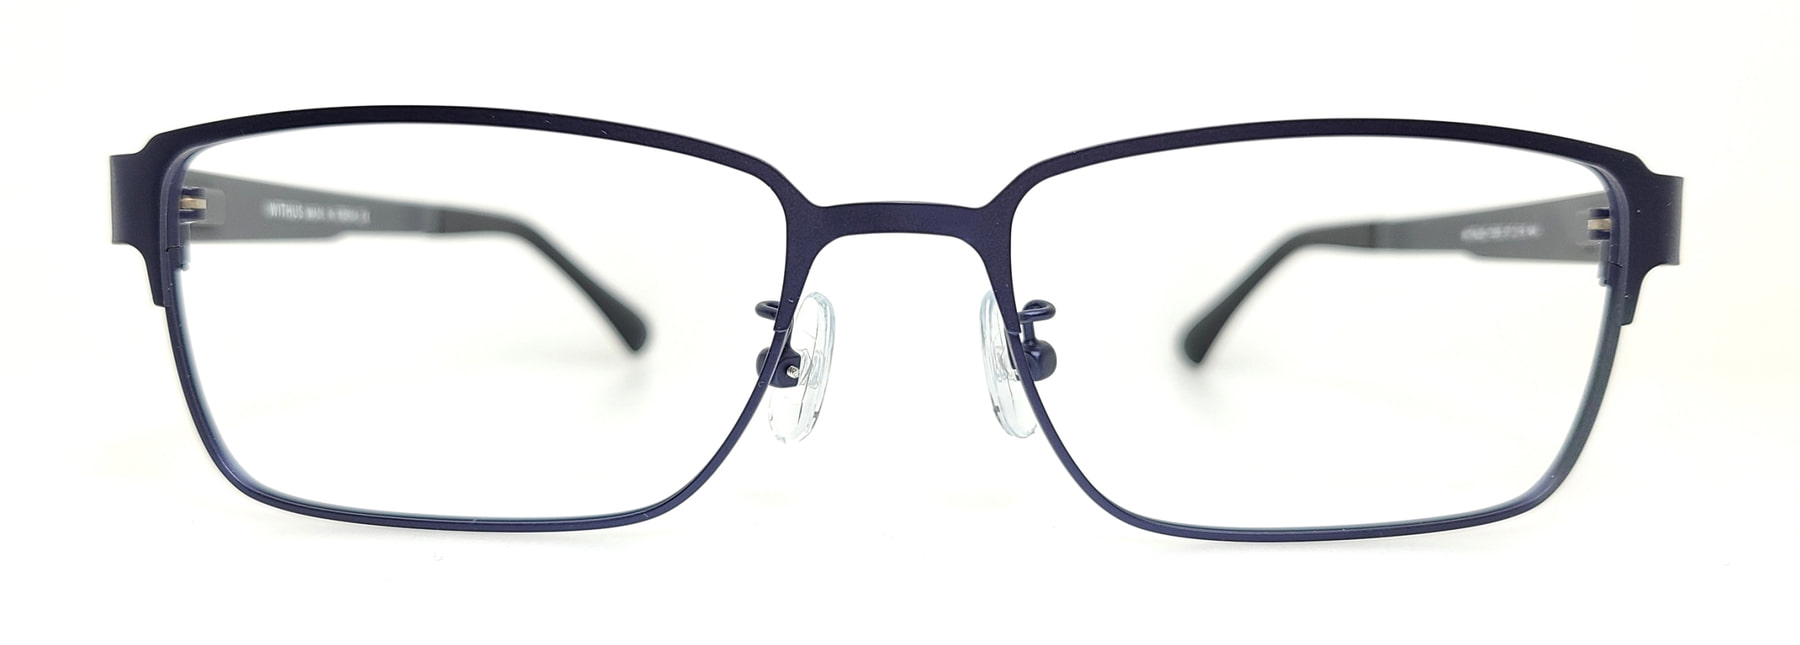 WITHUS-7355, Korean glasses, sunglasses, eyeglasses, glasses